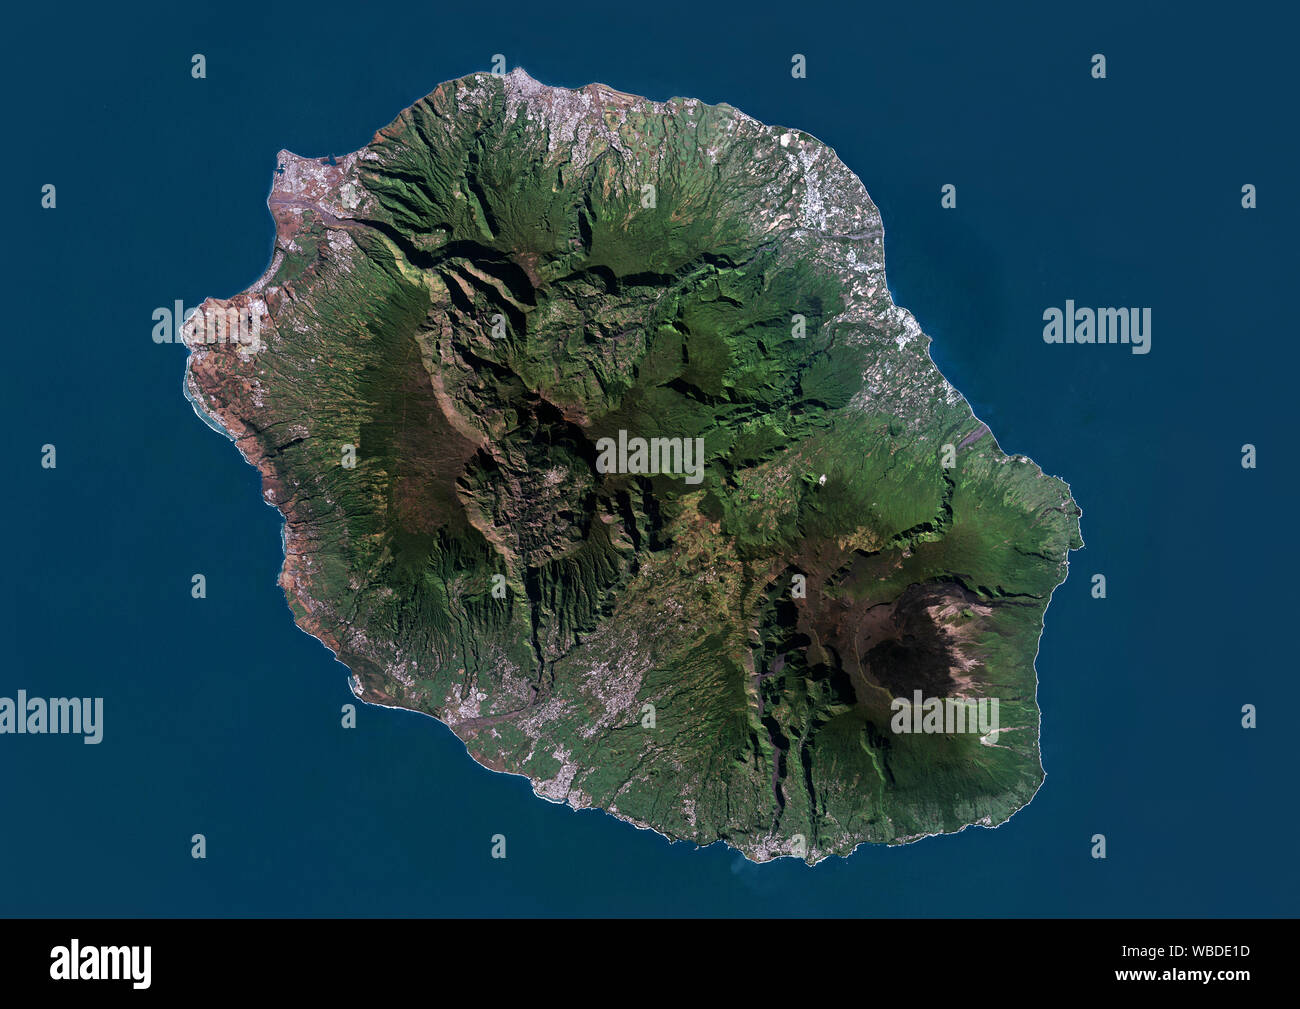 Farbe Satellitenbild der Insel Reunion im Indischen Ozean. Diese Insel ist von zwei Vulkane, Vulkan Piton des Neiges, der höchste Punkt auf der Insel auf 3069 m und Piton de la Fournaise auf 2632 m, ein aktiver schildvulkan am östlichen Ende der Insel La Réunion. Bild am 01 Mai, 2014 von Landsat 8 Satelliten. Stockfoto